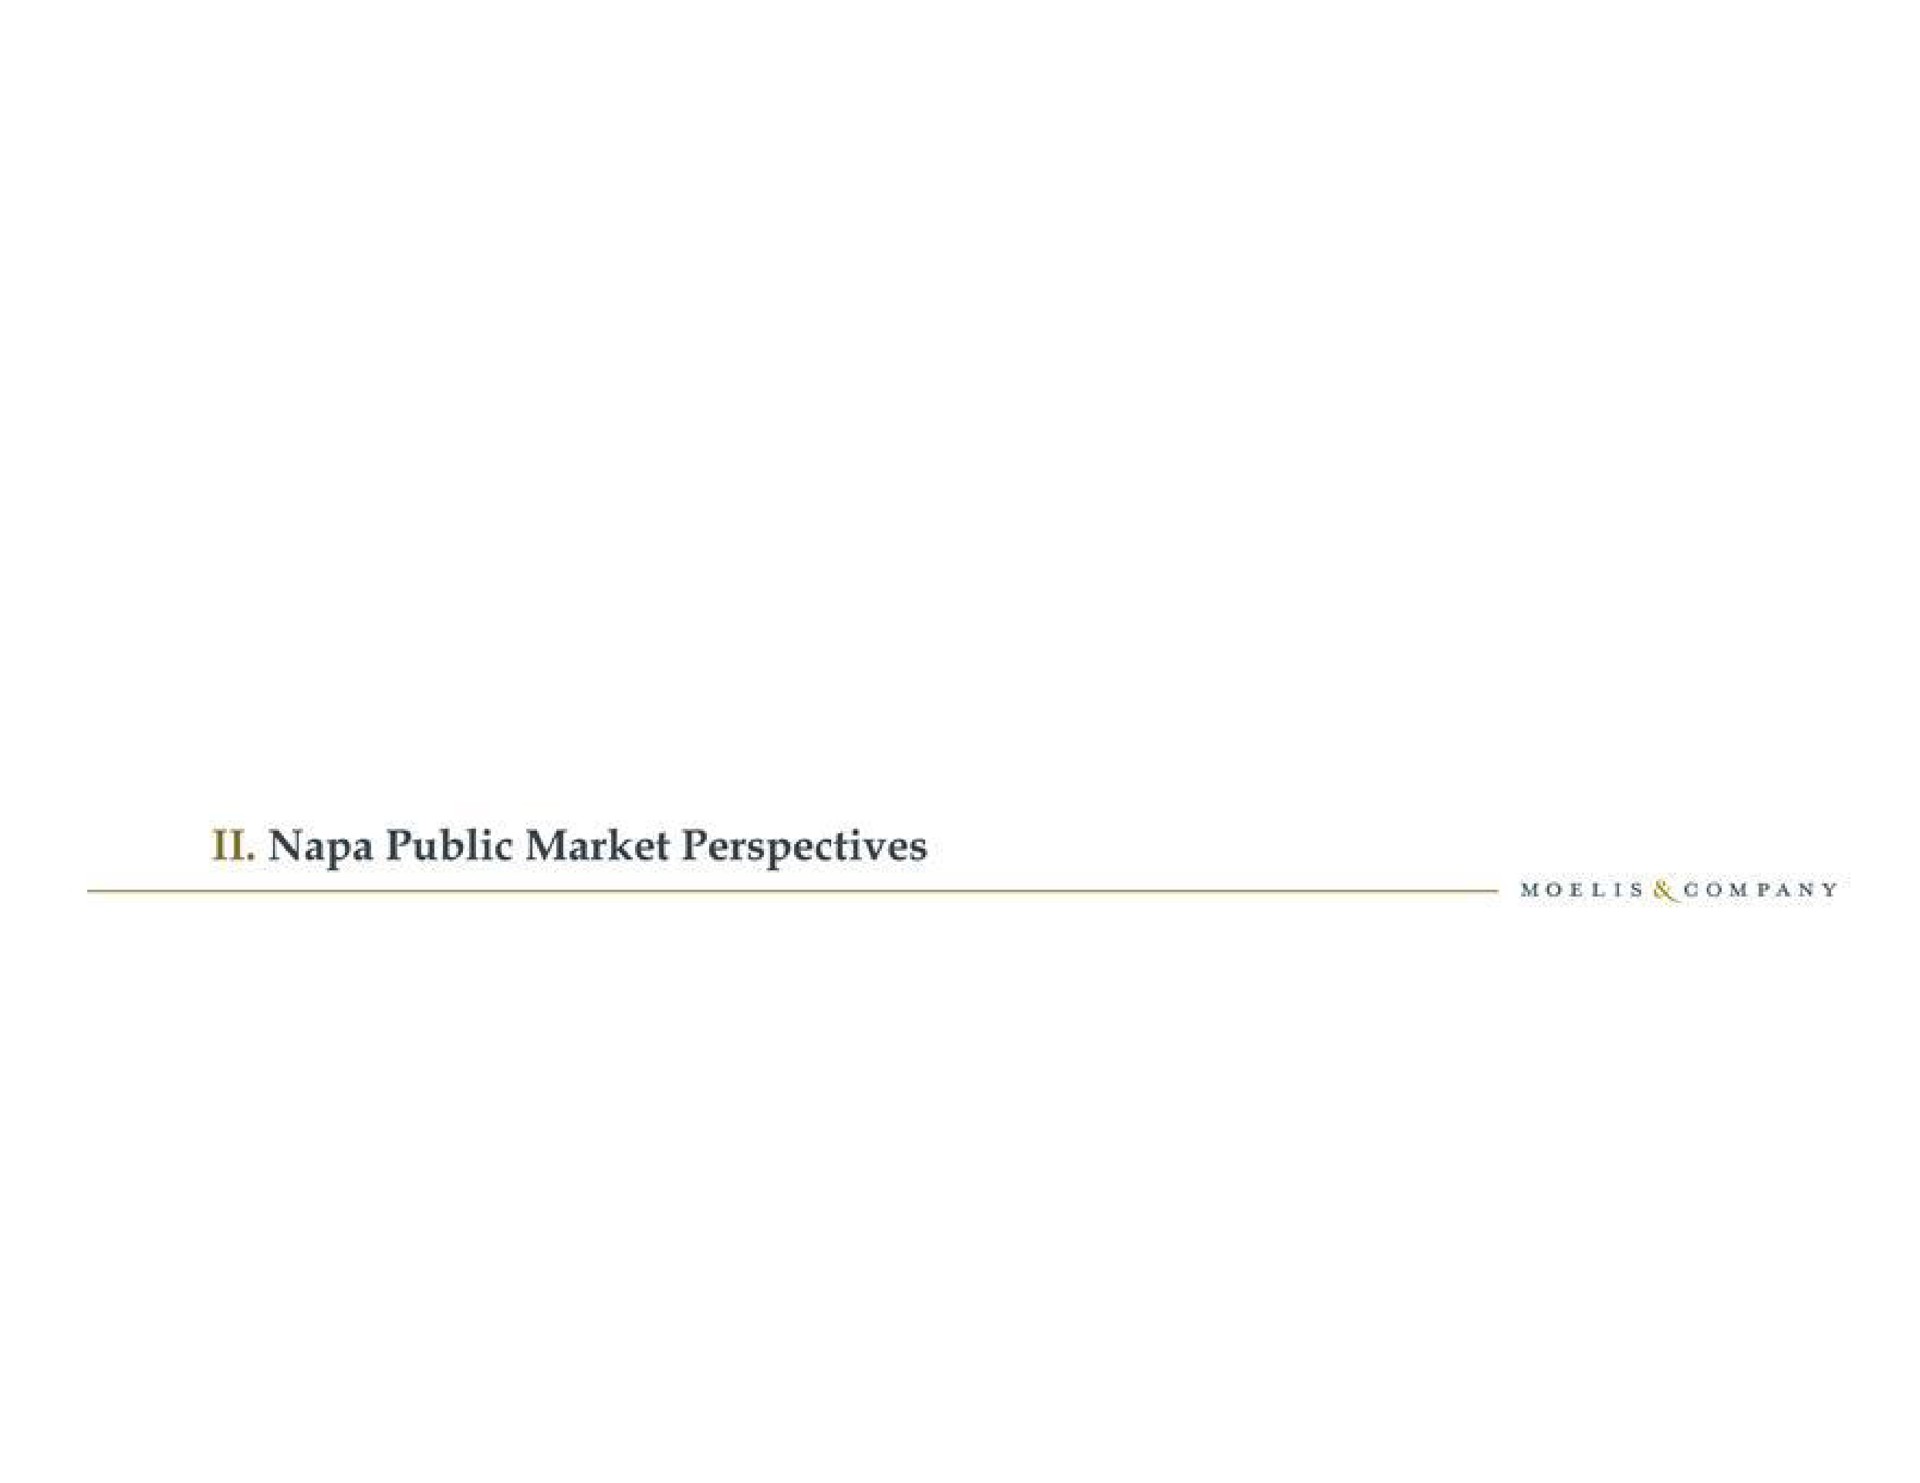 napa public market perspectives | Moelis & Company